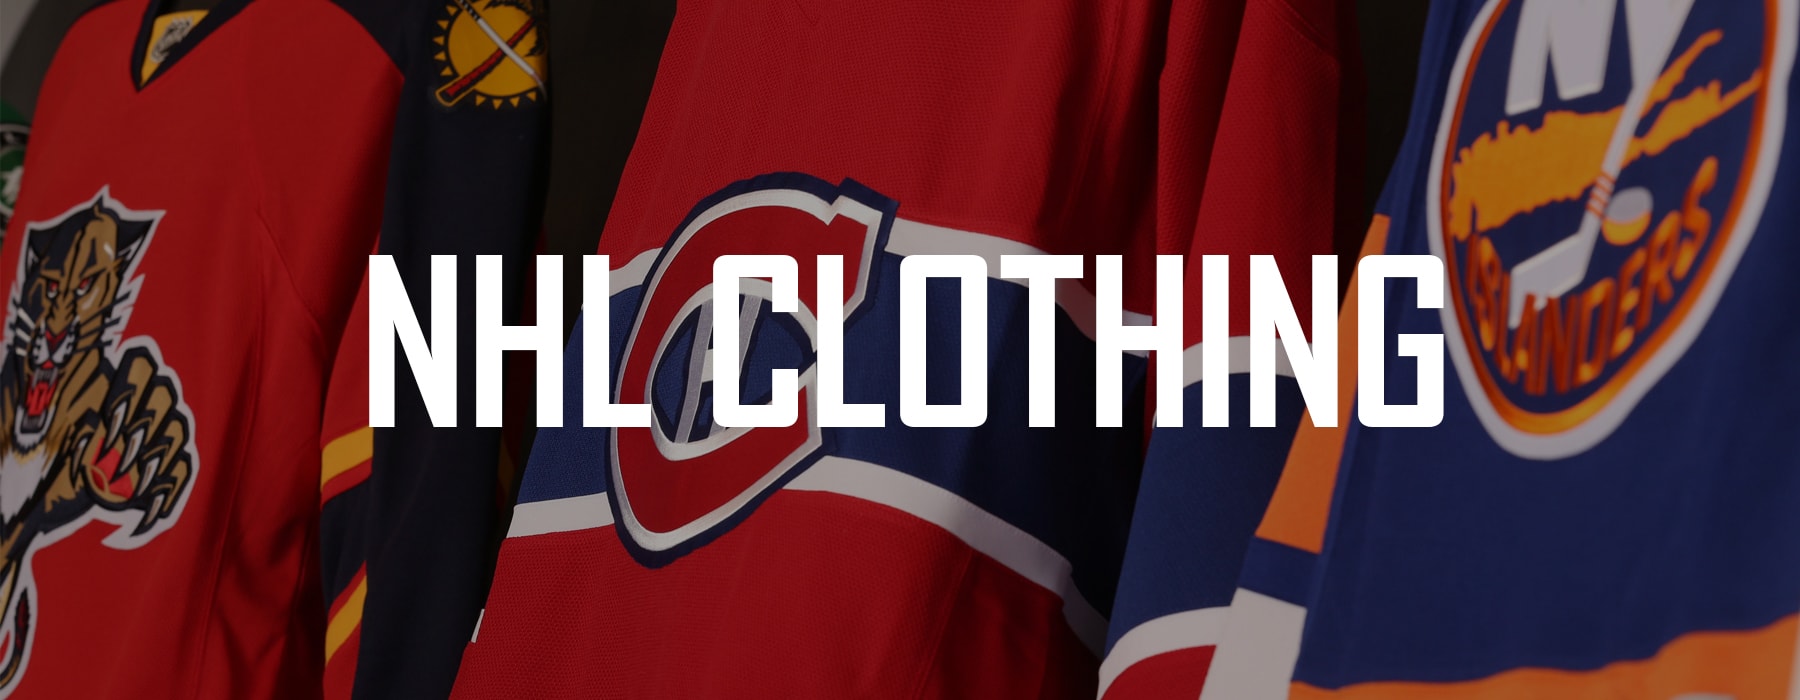 NHL Clothing | Pro Hockey Life